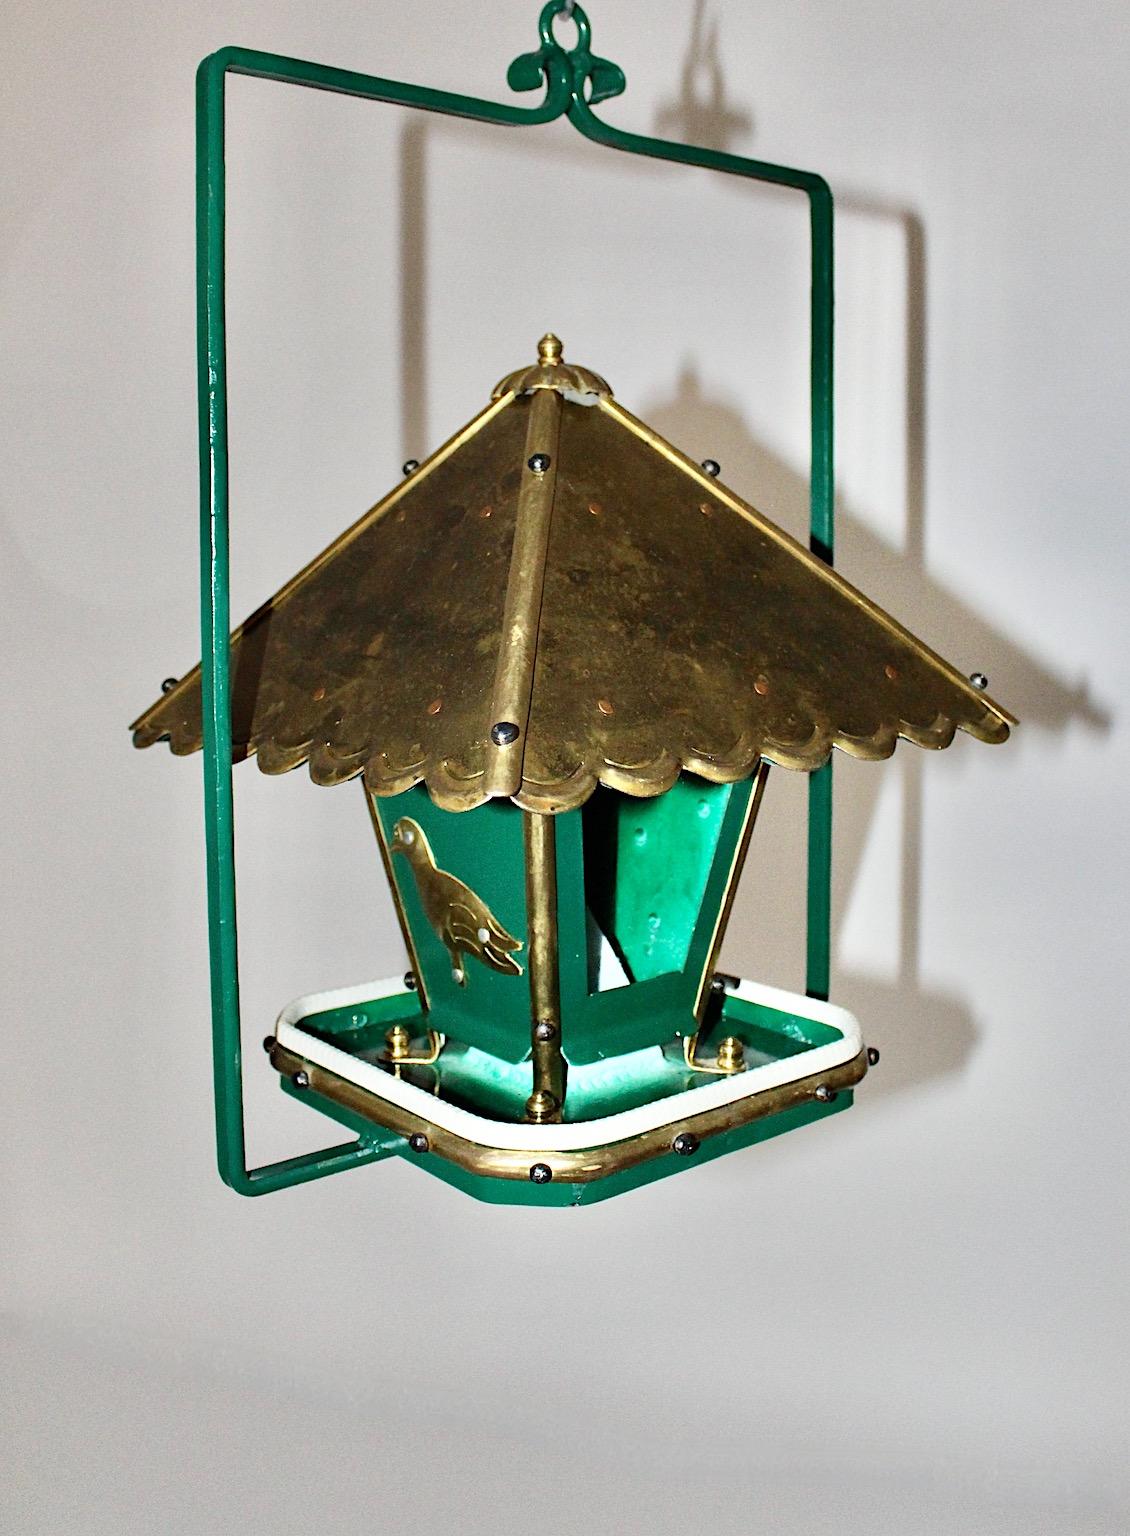 Maison d'oiseau vintage de style Art of Vintage faite à la main en métal vert, laiton et cuivre des années 1980 en Autriche.
Ce nichoir vintage unique et fait à la main présente un toit pivotant avec d'étonnants détails de pagode, facile à remplir